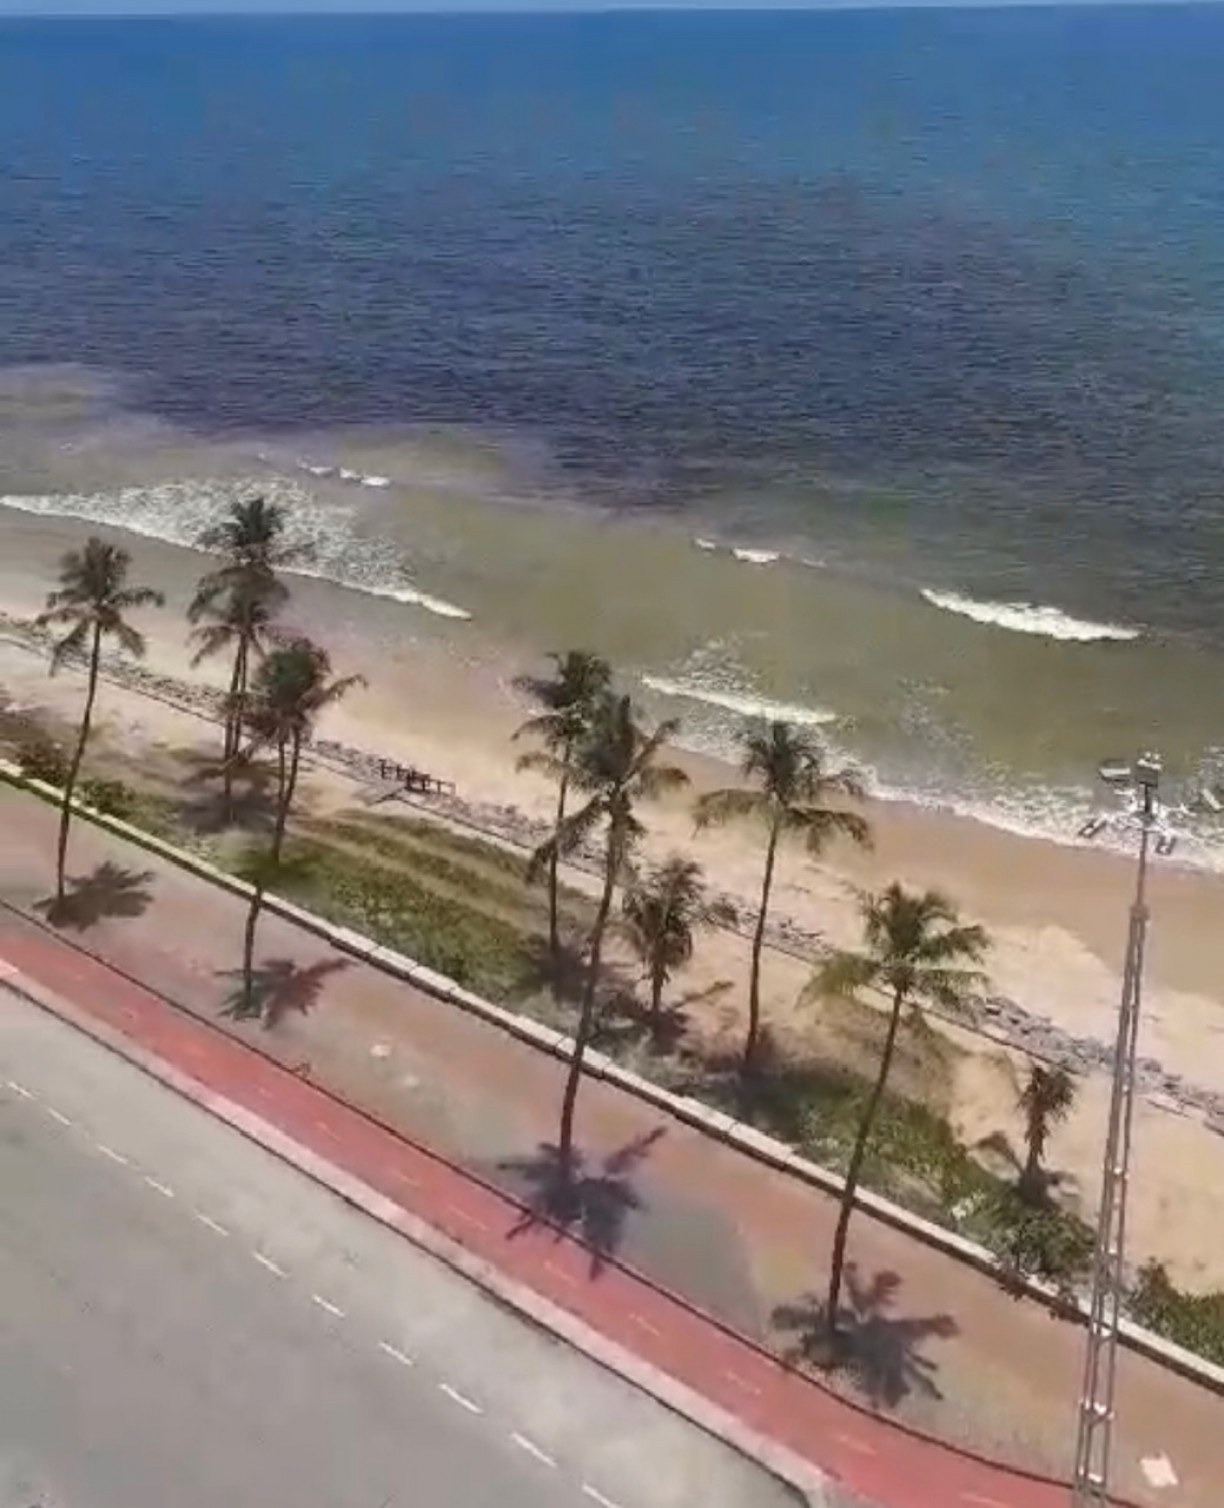 Maré vermelha: Análise da água do mar de Boa Viagem, no Recife, confirma maré vermelha; praia segue monitorada 